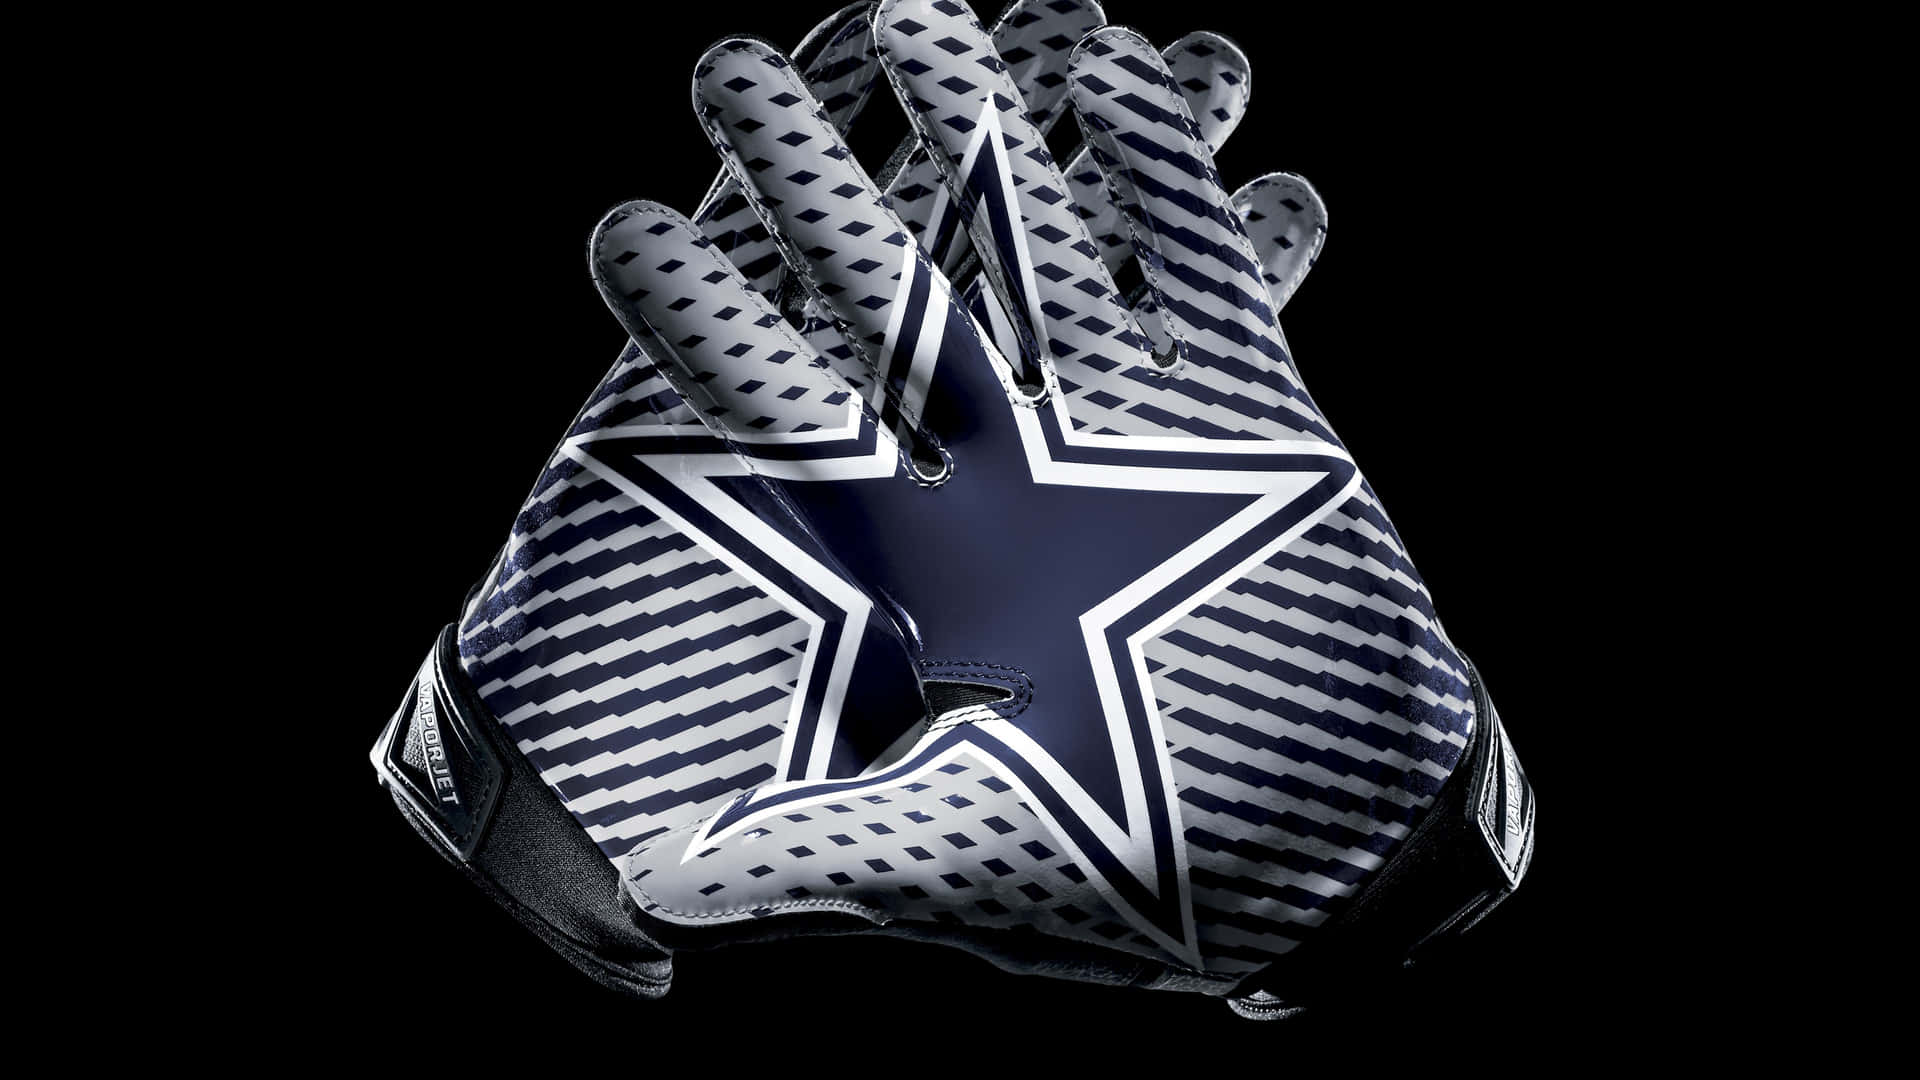 Guantescon El Logotipo De Los Dallas Cowboys En El Iphone. Fondo de pantalla